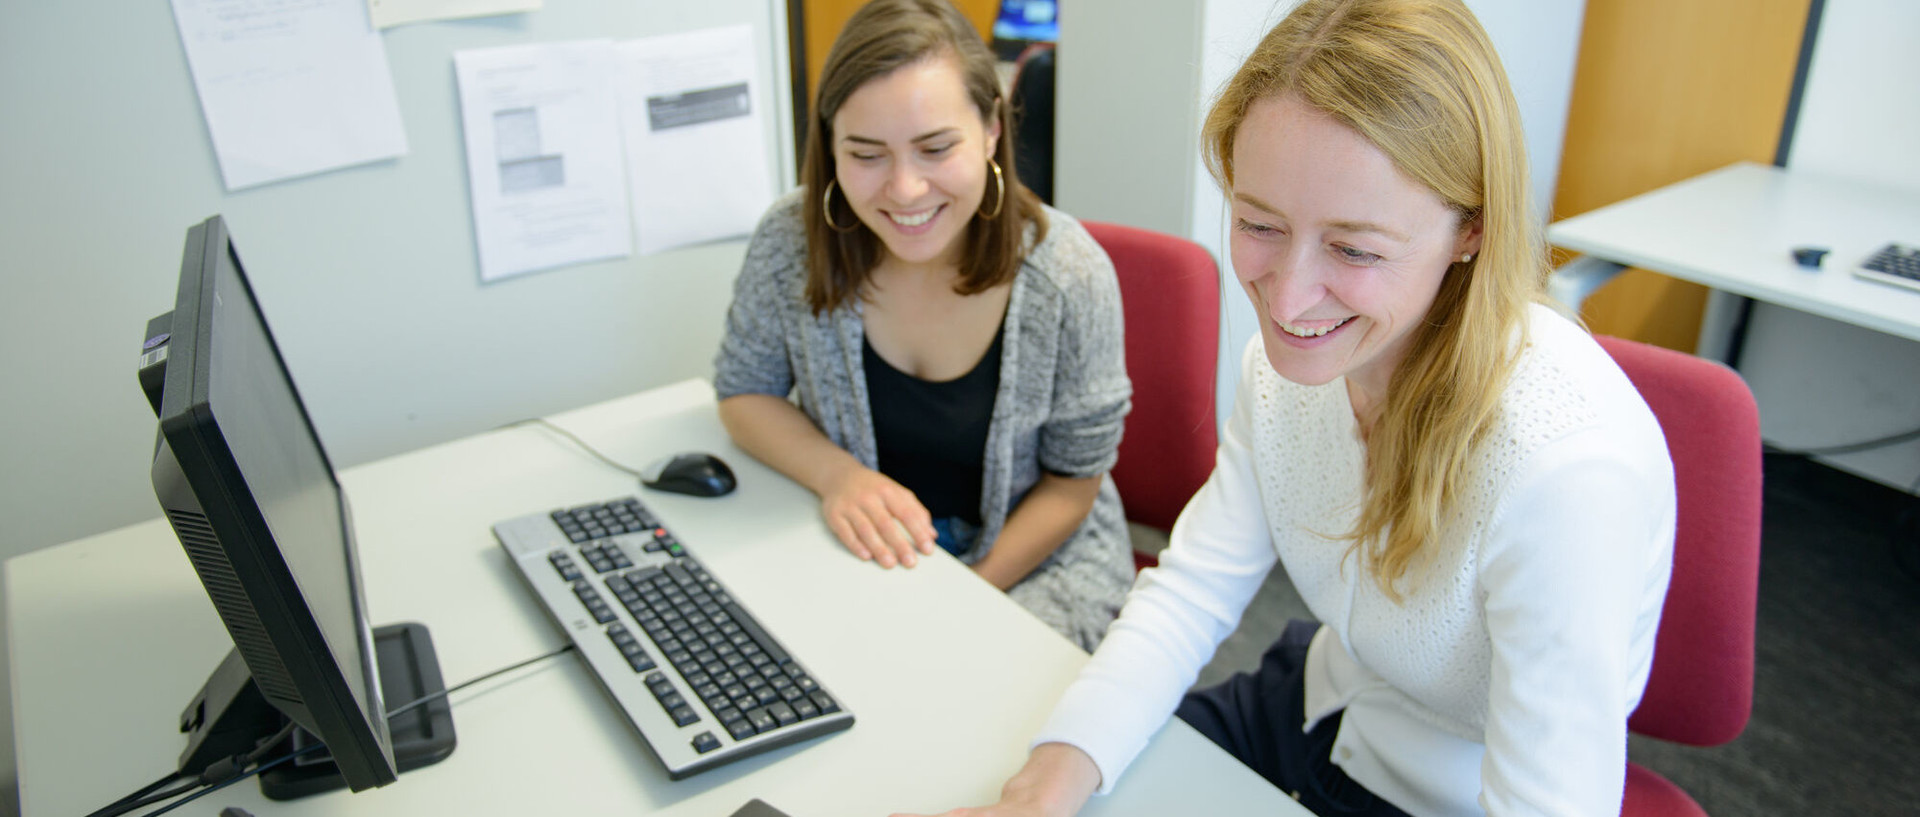 Zwei Studentinnen sitzen lachend an einem Tisch nebeneinander vor einem Laptop und einem Bildschirm mit Tastatur